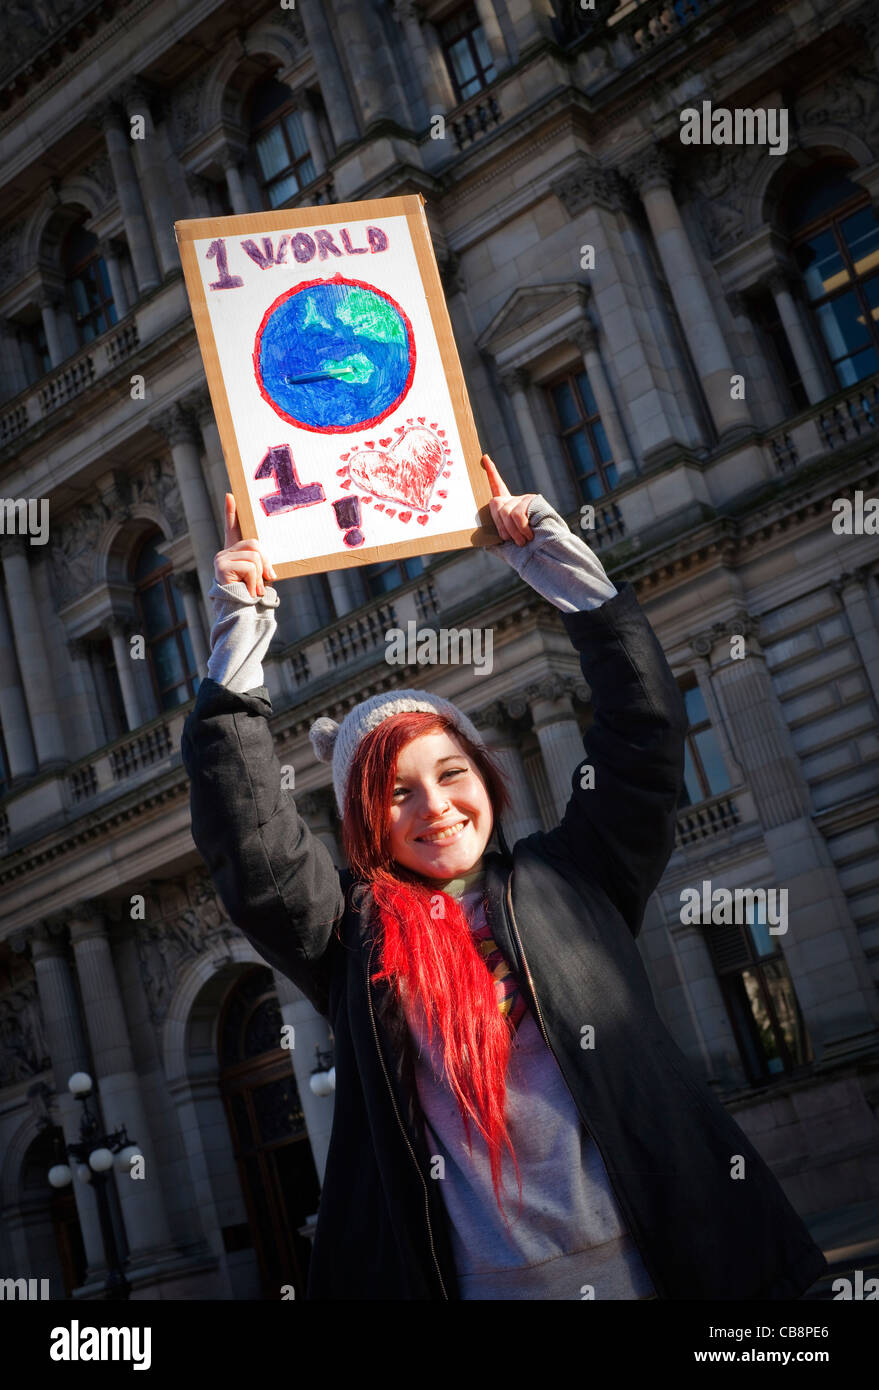 Die 17-jährige Katy Arthur Protestieren über die Weltwirtschaft und die soziale Ungleichheit in der Welt., George Square, Glasgow Stockfoto